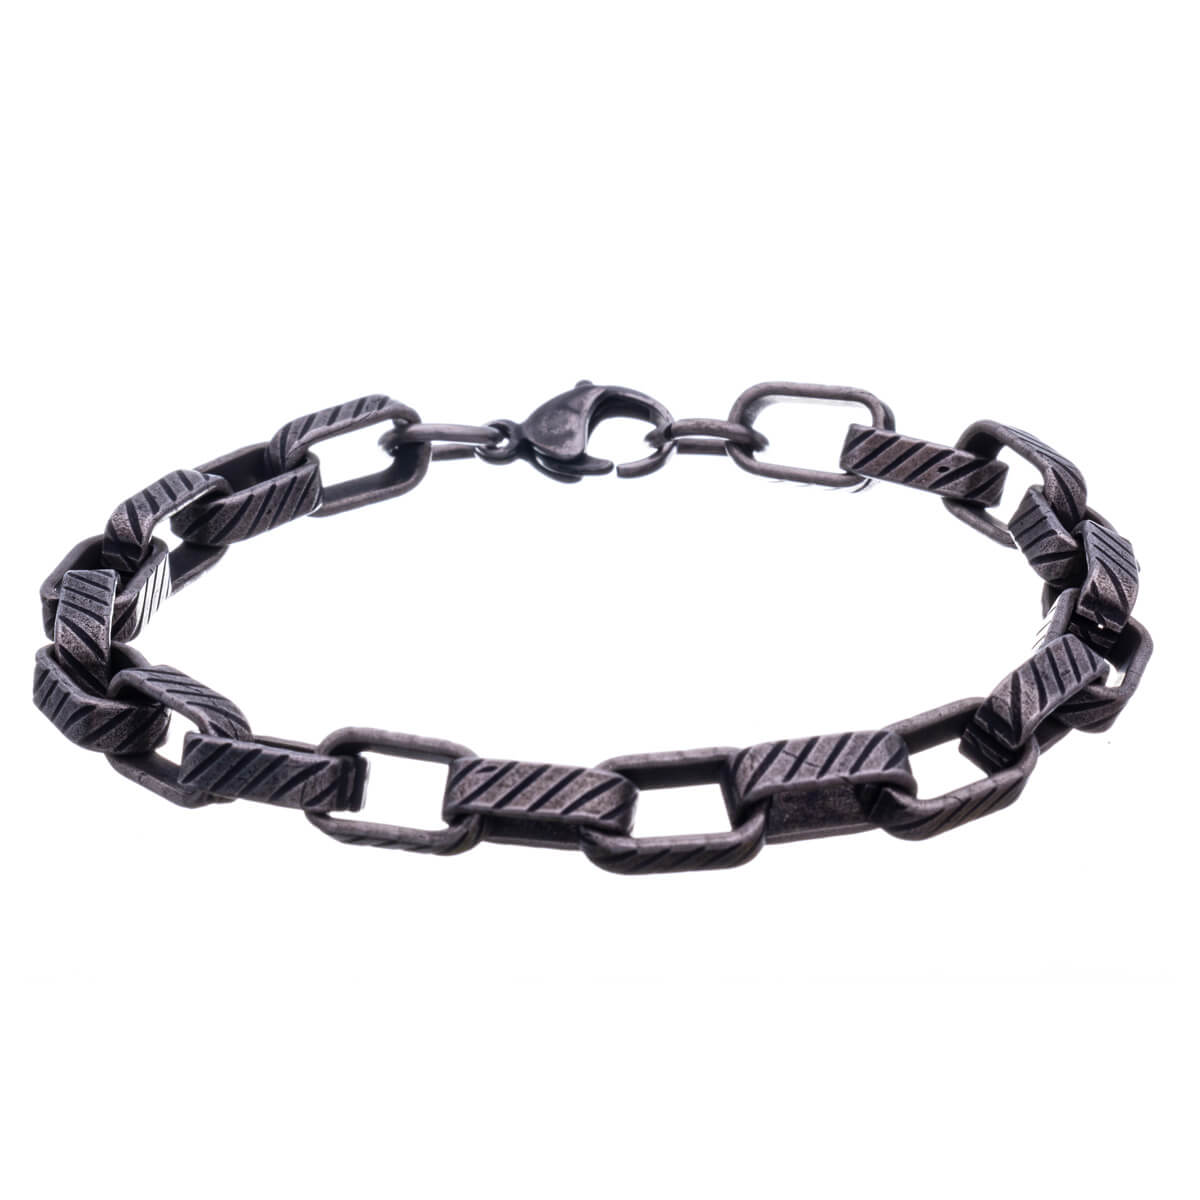 Textured dark steel chain bracelet 22cm (Steel 316L)